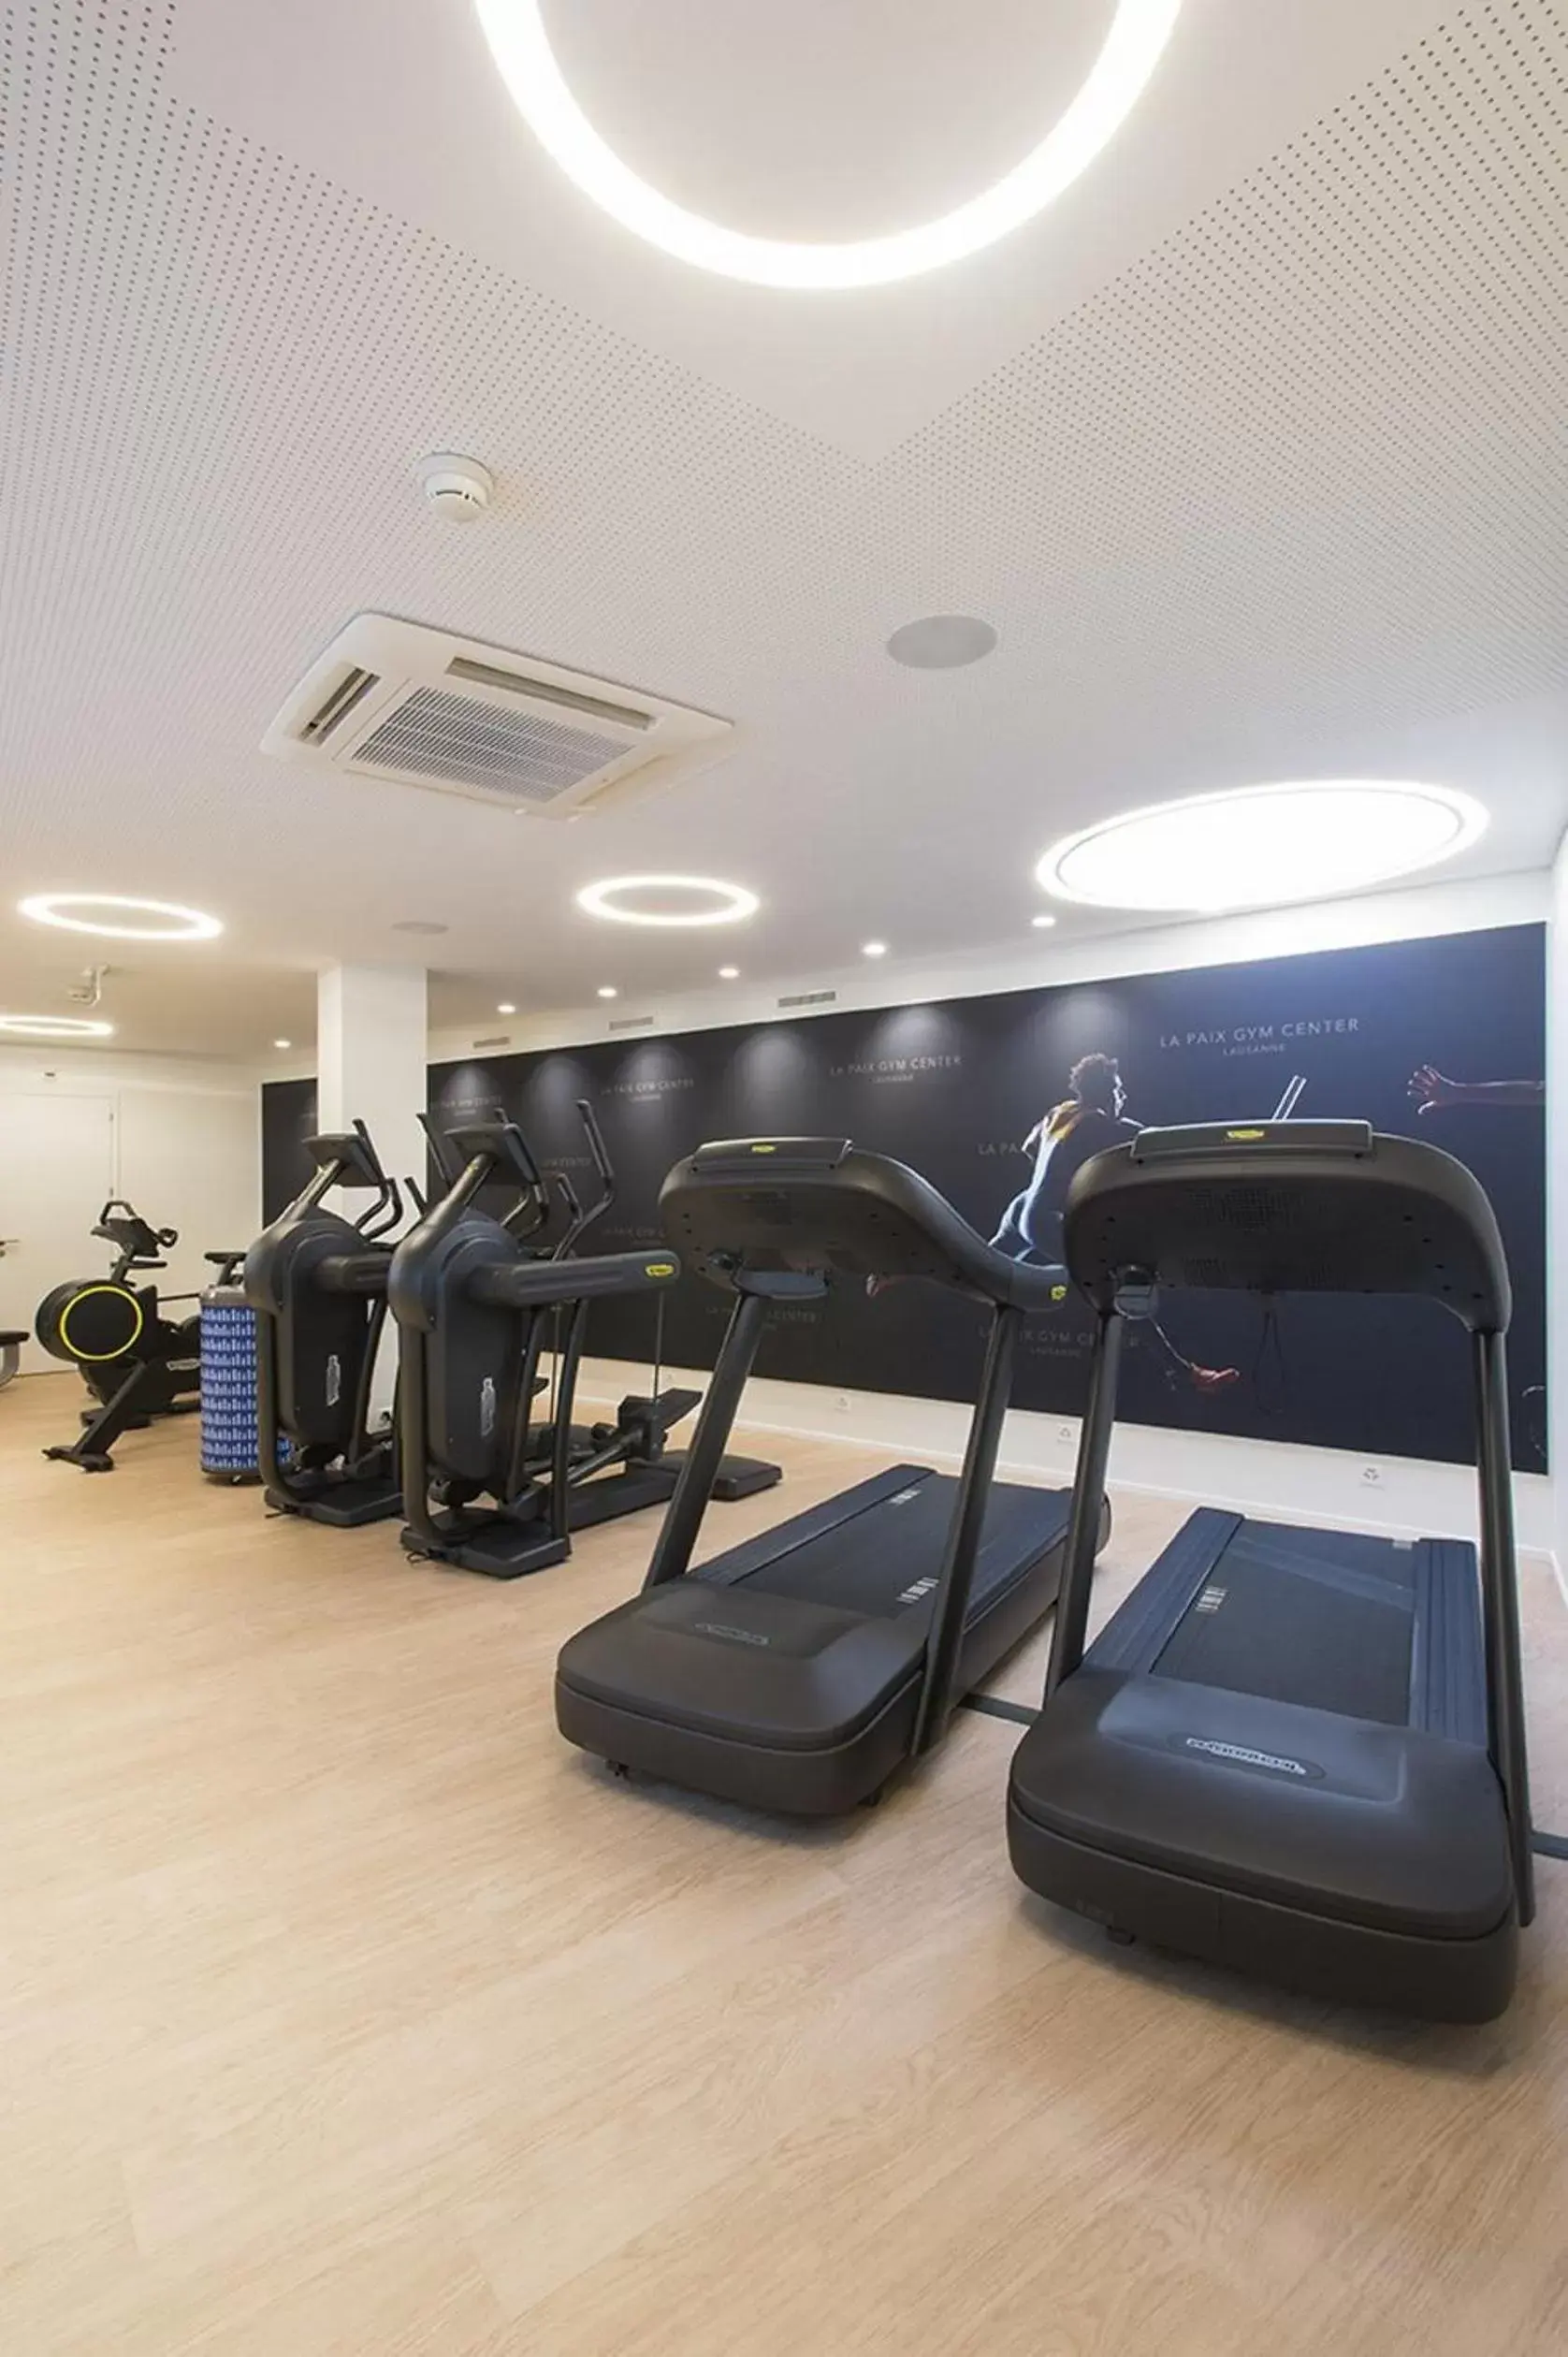 Fitness centre/facilities, Fitness Center/Facilities in Hôtel de la Paix Lausanne